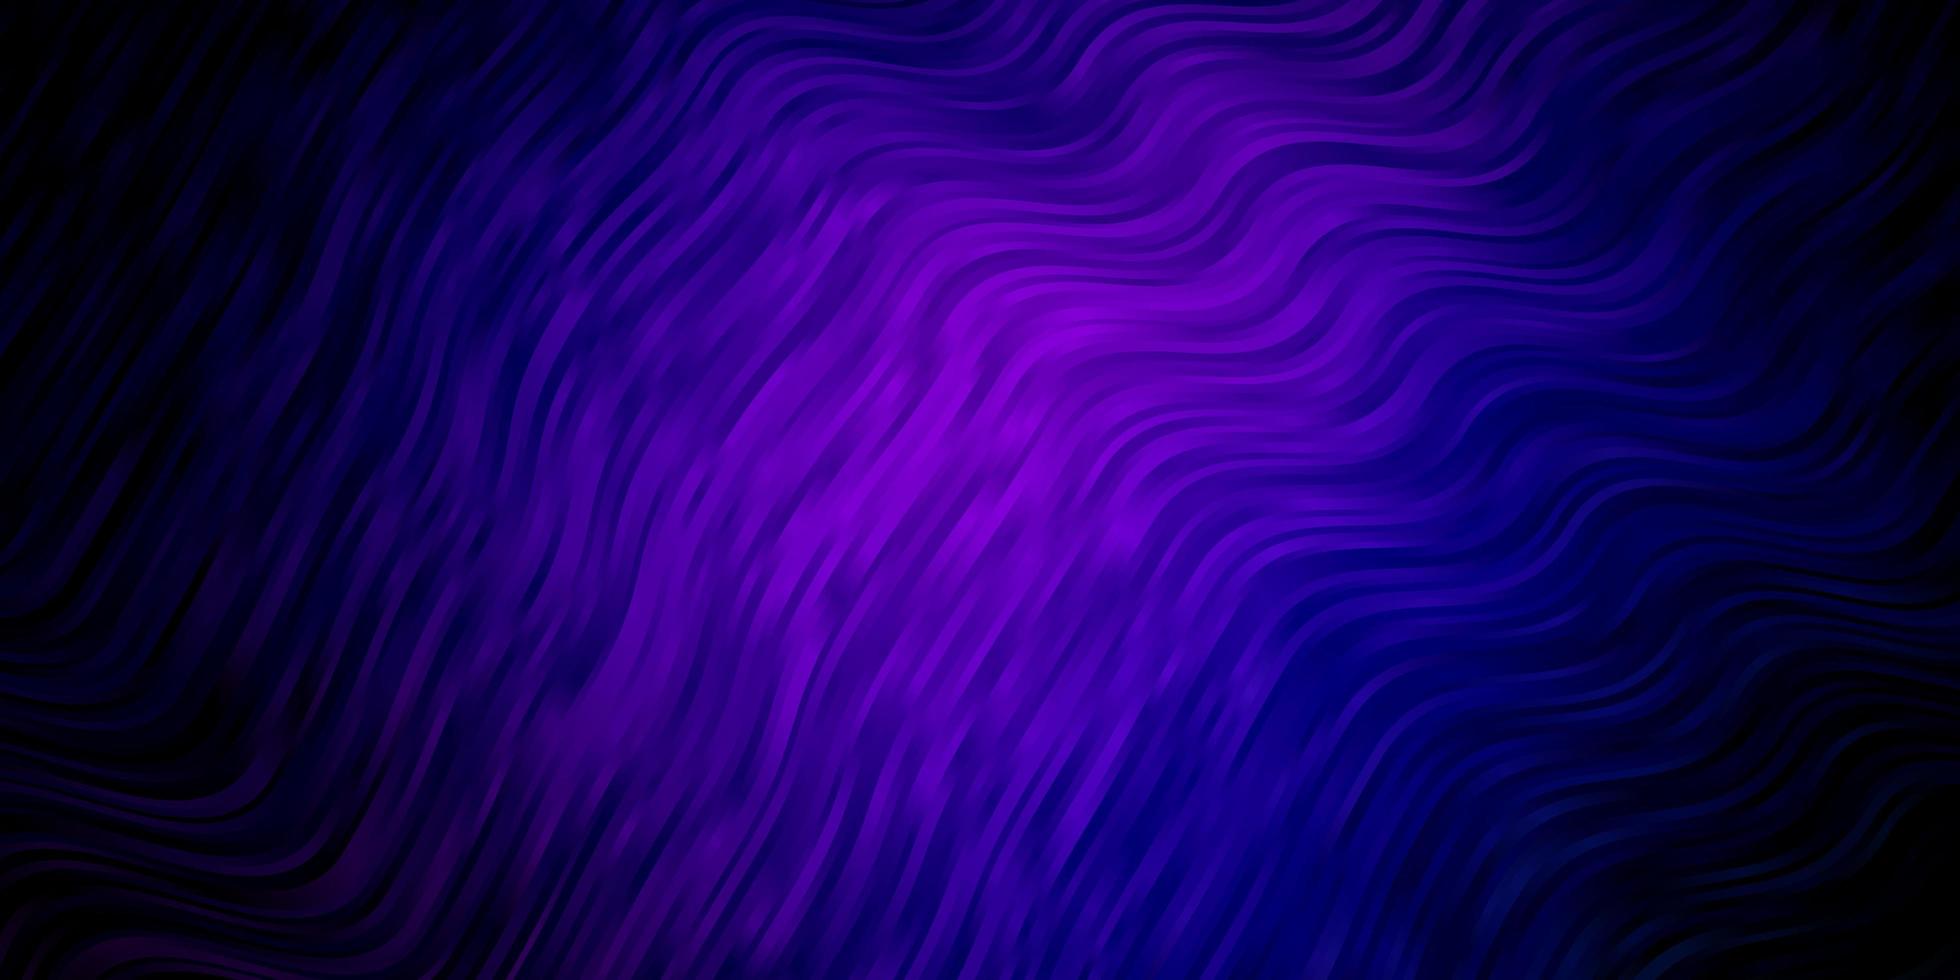 mörkrosa, blå vektormönster med sneda linjer. vektor